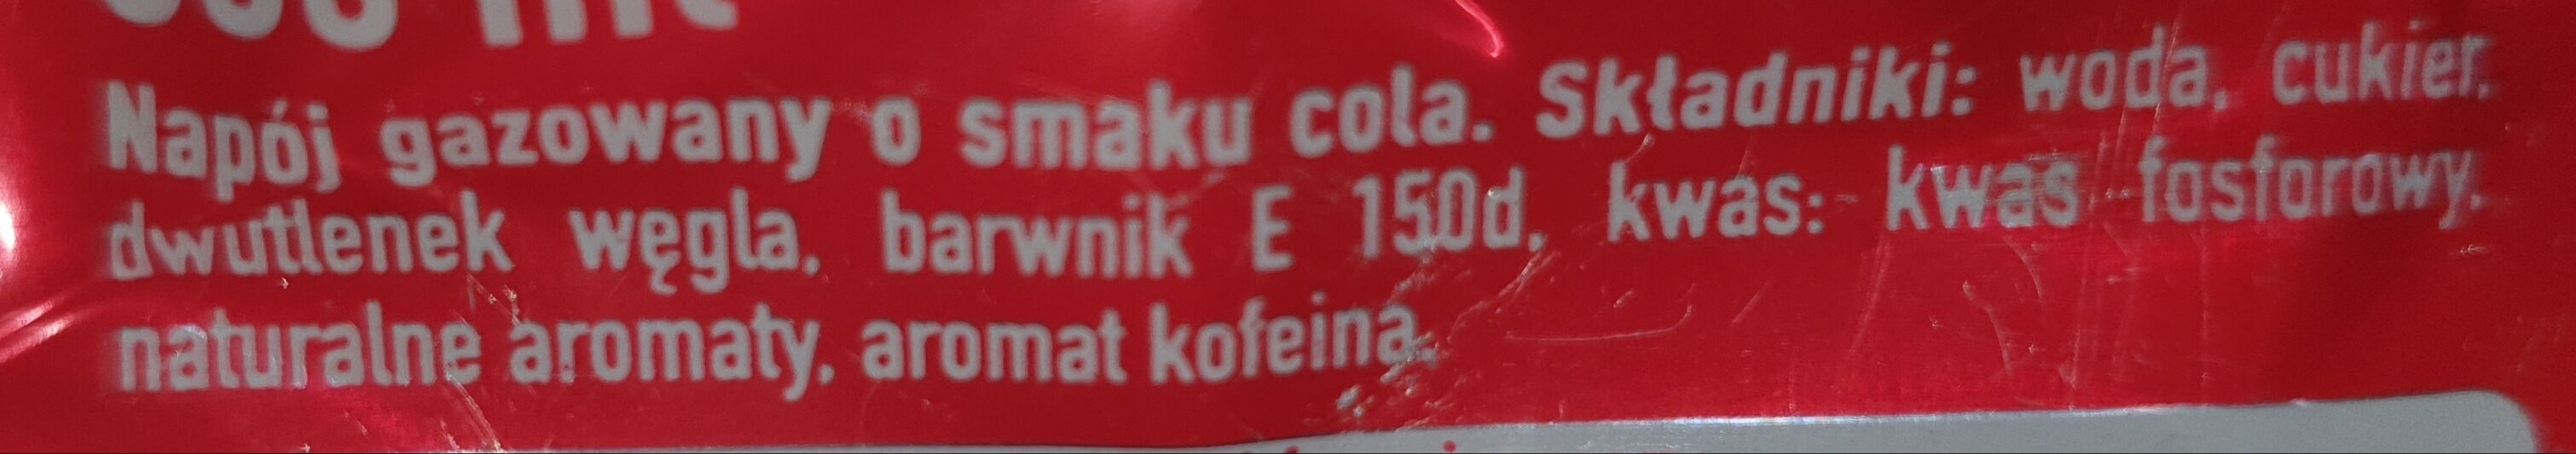 Coca-Cola - napój gazowany o smaku cola - Ingredients - pl